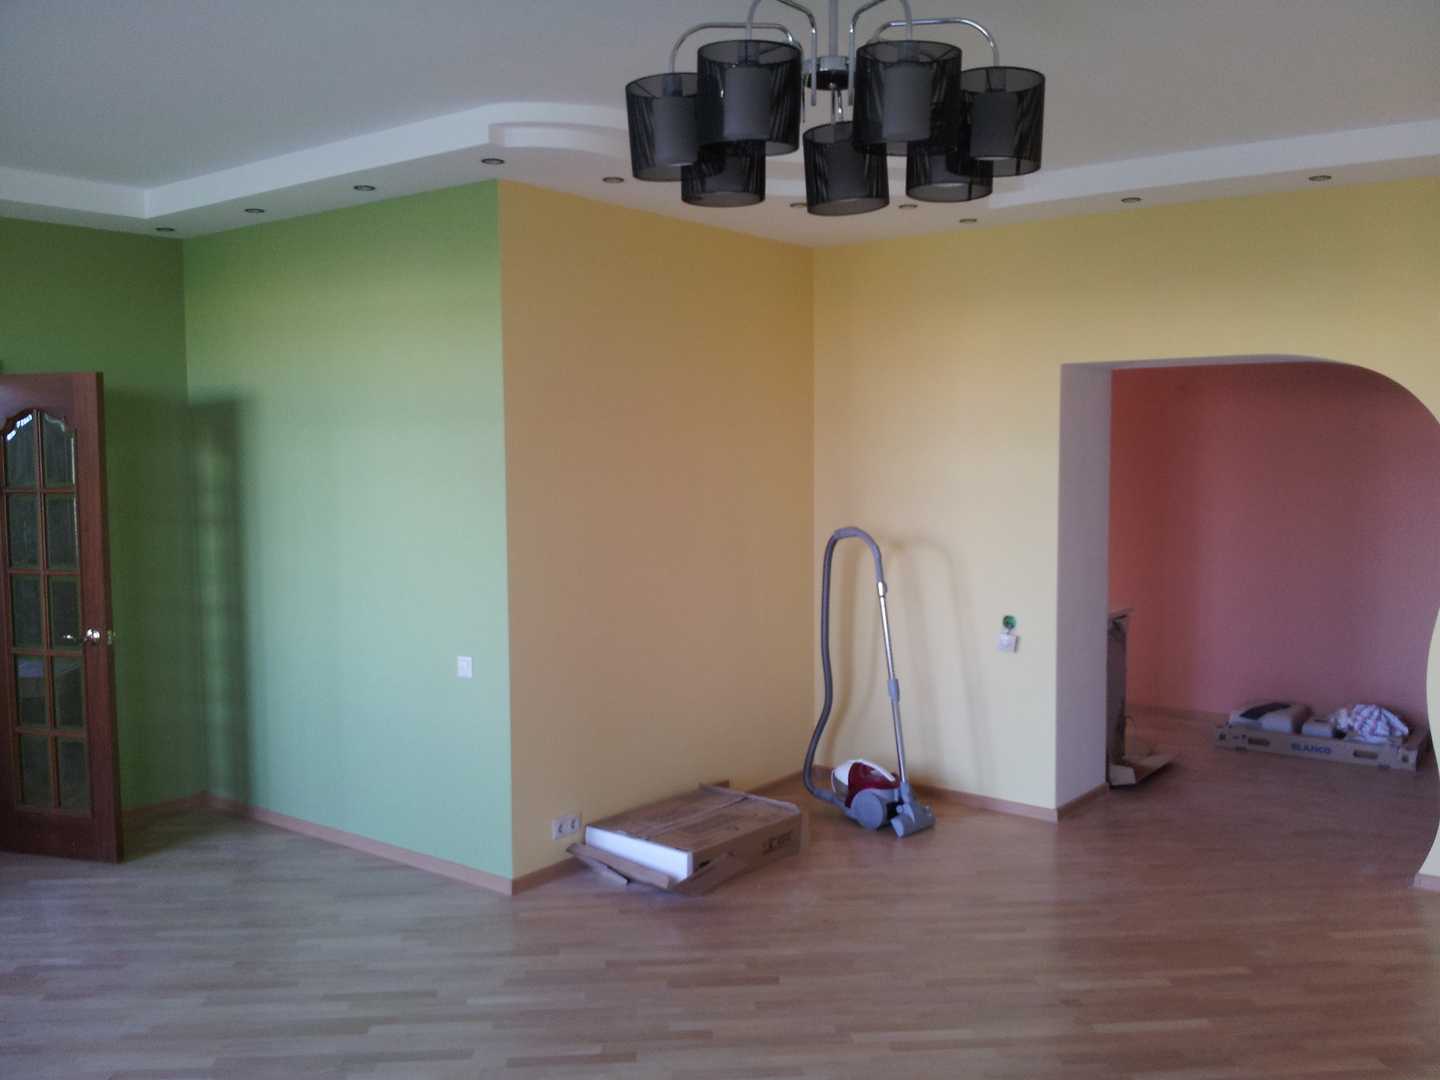 Цена покраски деревянного потолка за квадратный метр и чем покрасить